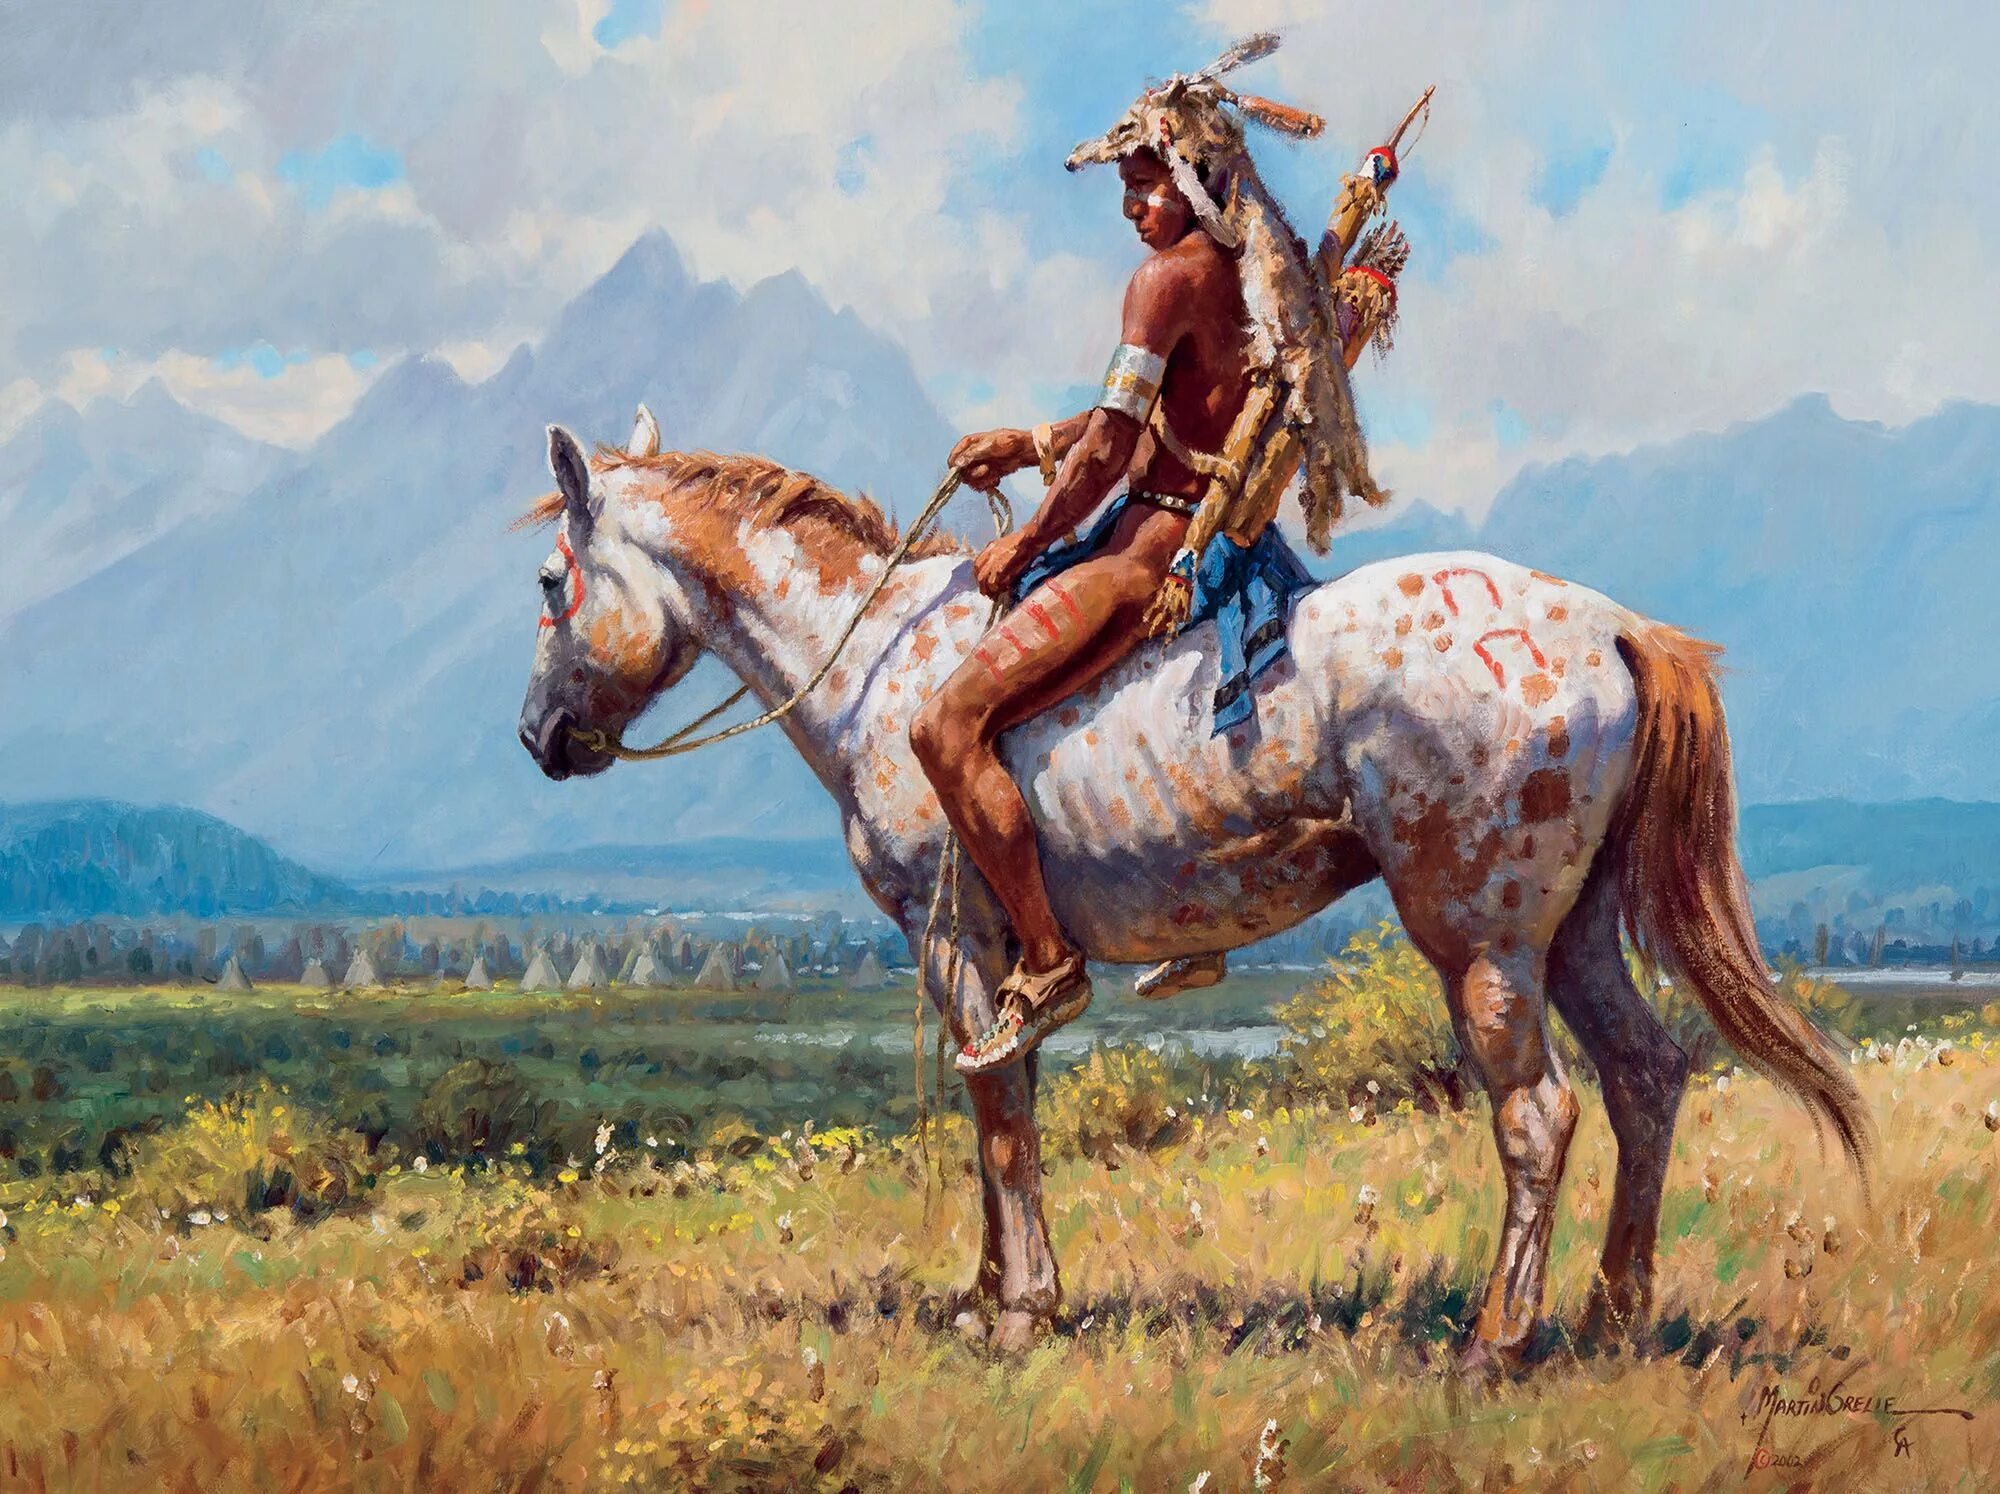 Ж кон. Martin Grelle картины. Картины художников - конные индейцы Лакота. Художник-ковбой Martin Grelle.